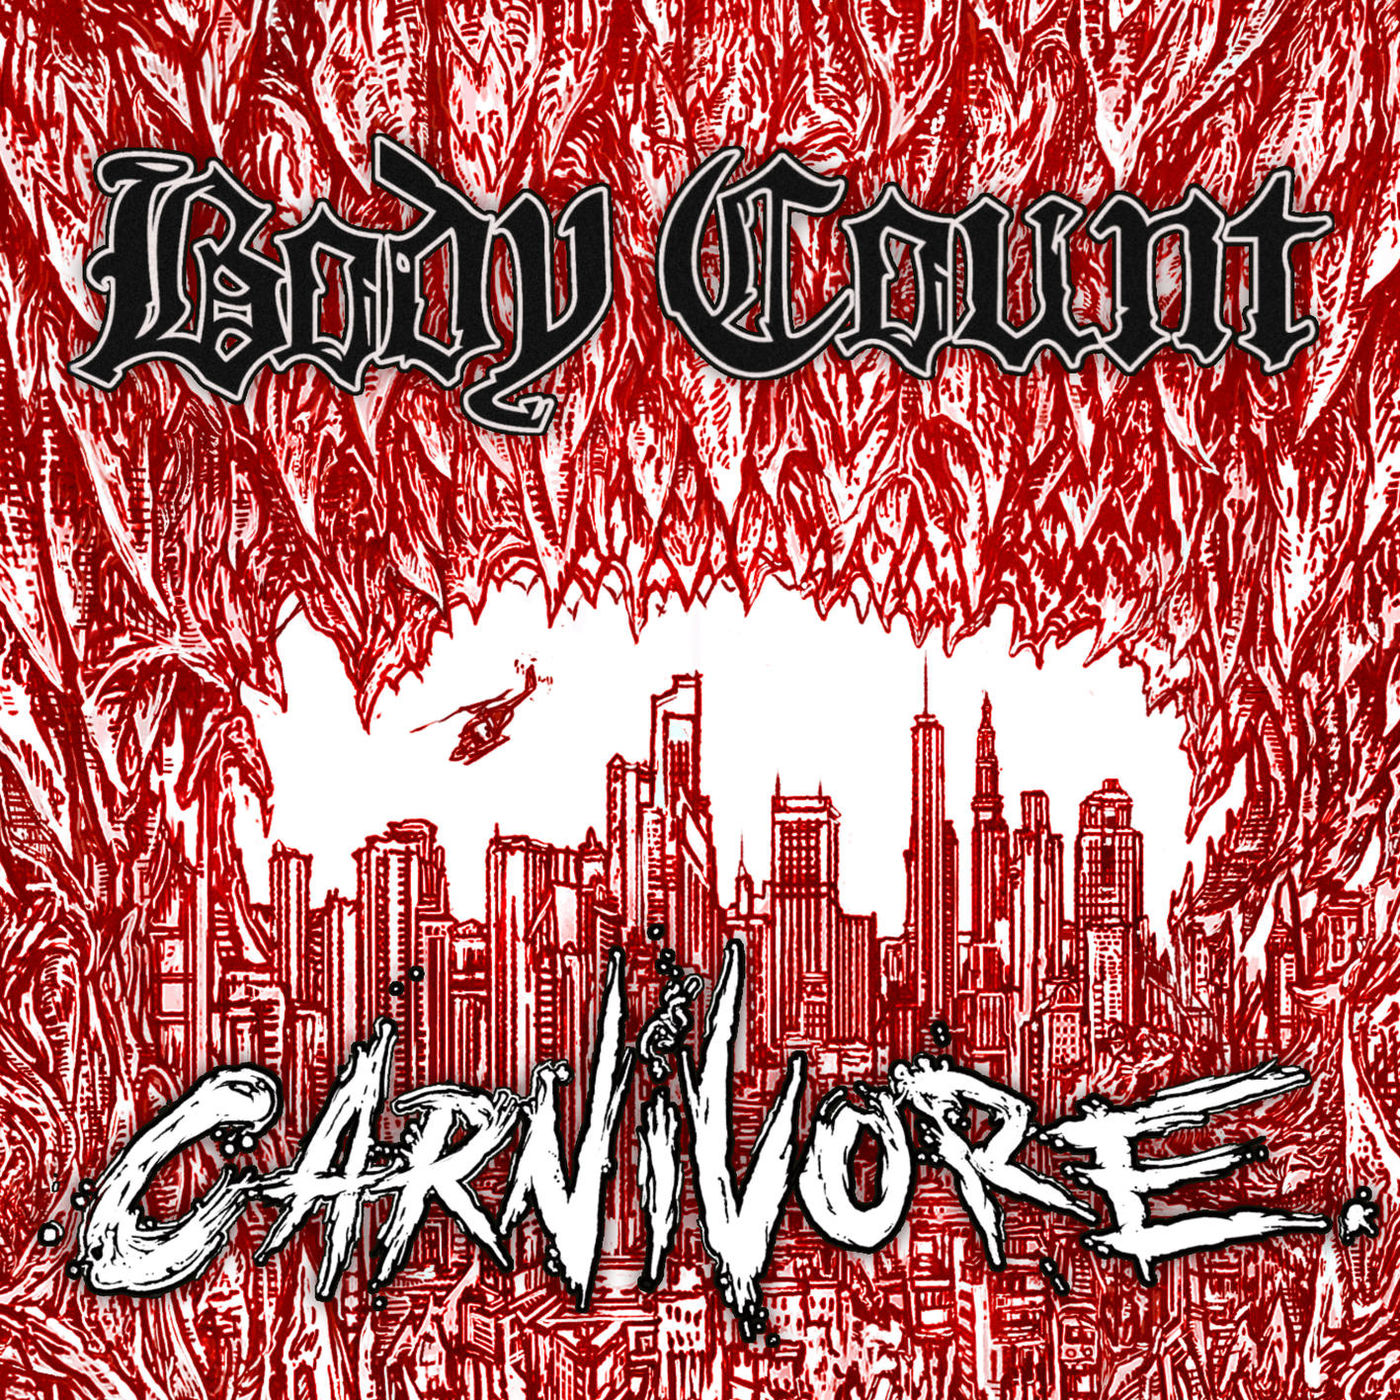 Body Count - Carnivore (Single) (2019)